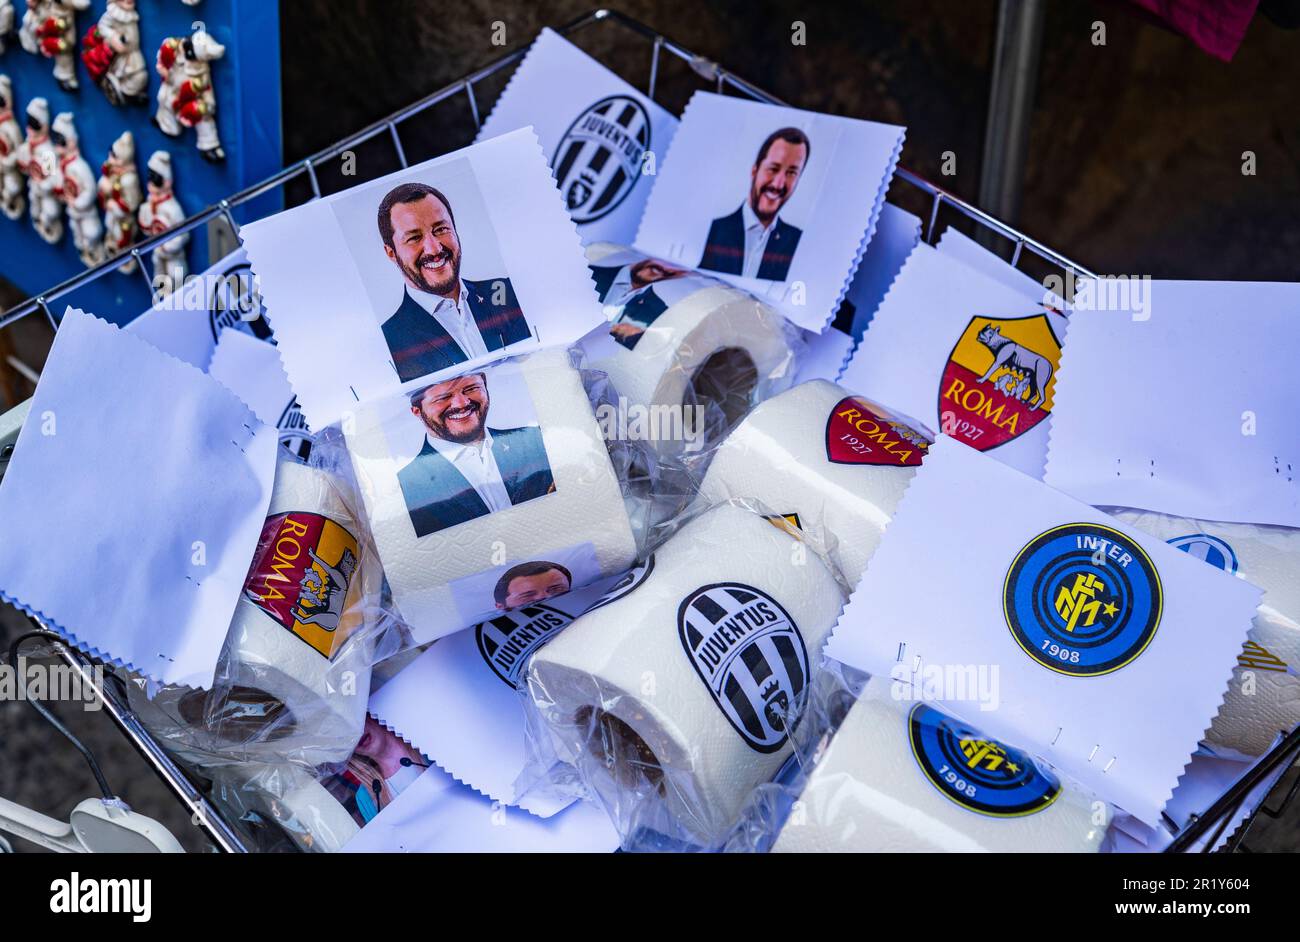 Papier toilette avec visages célèbres et équipes de football dans une boutique de souvenirs de la vieille ville de Naples, Italie Banque D'Images